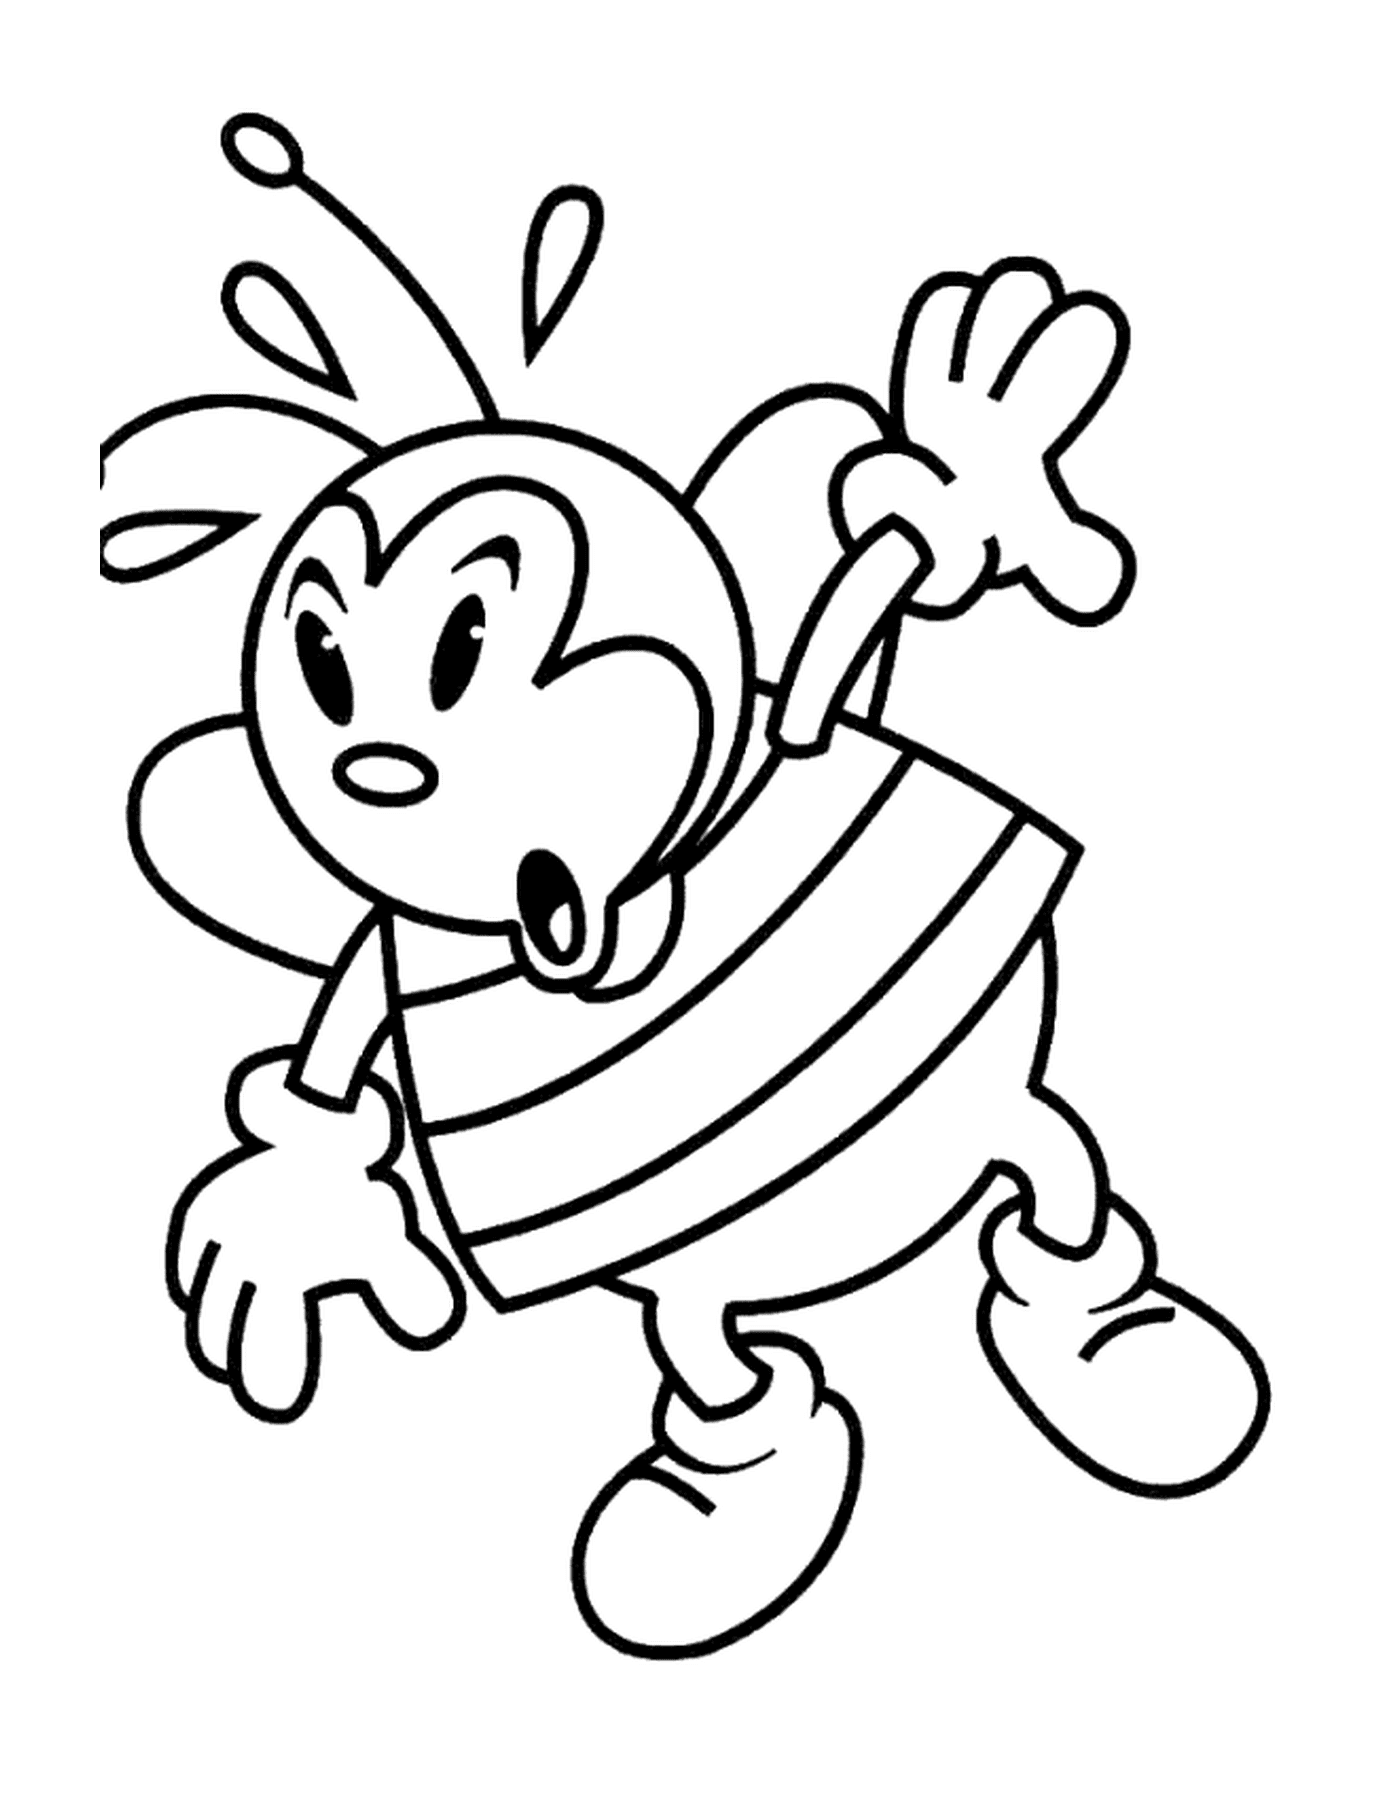  Dibujo de una abeja en lugar de una mariquita 